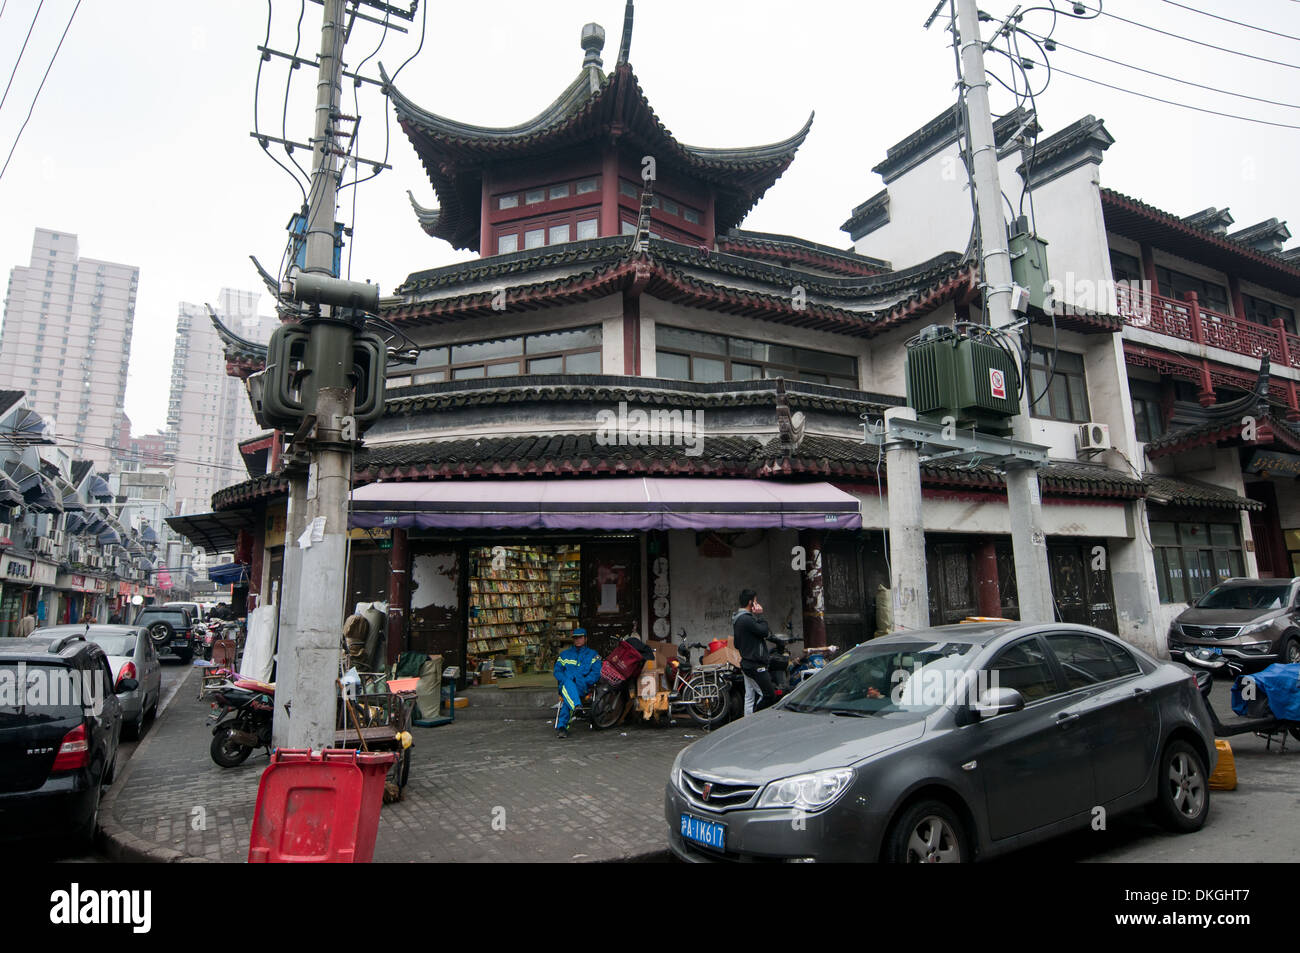 Wen Miao Temple appelé aussi temple de Confucius de Shanghai au n°215 Wenmiao Road, Huangpu District, Shanghai, Chine Banque D'Images